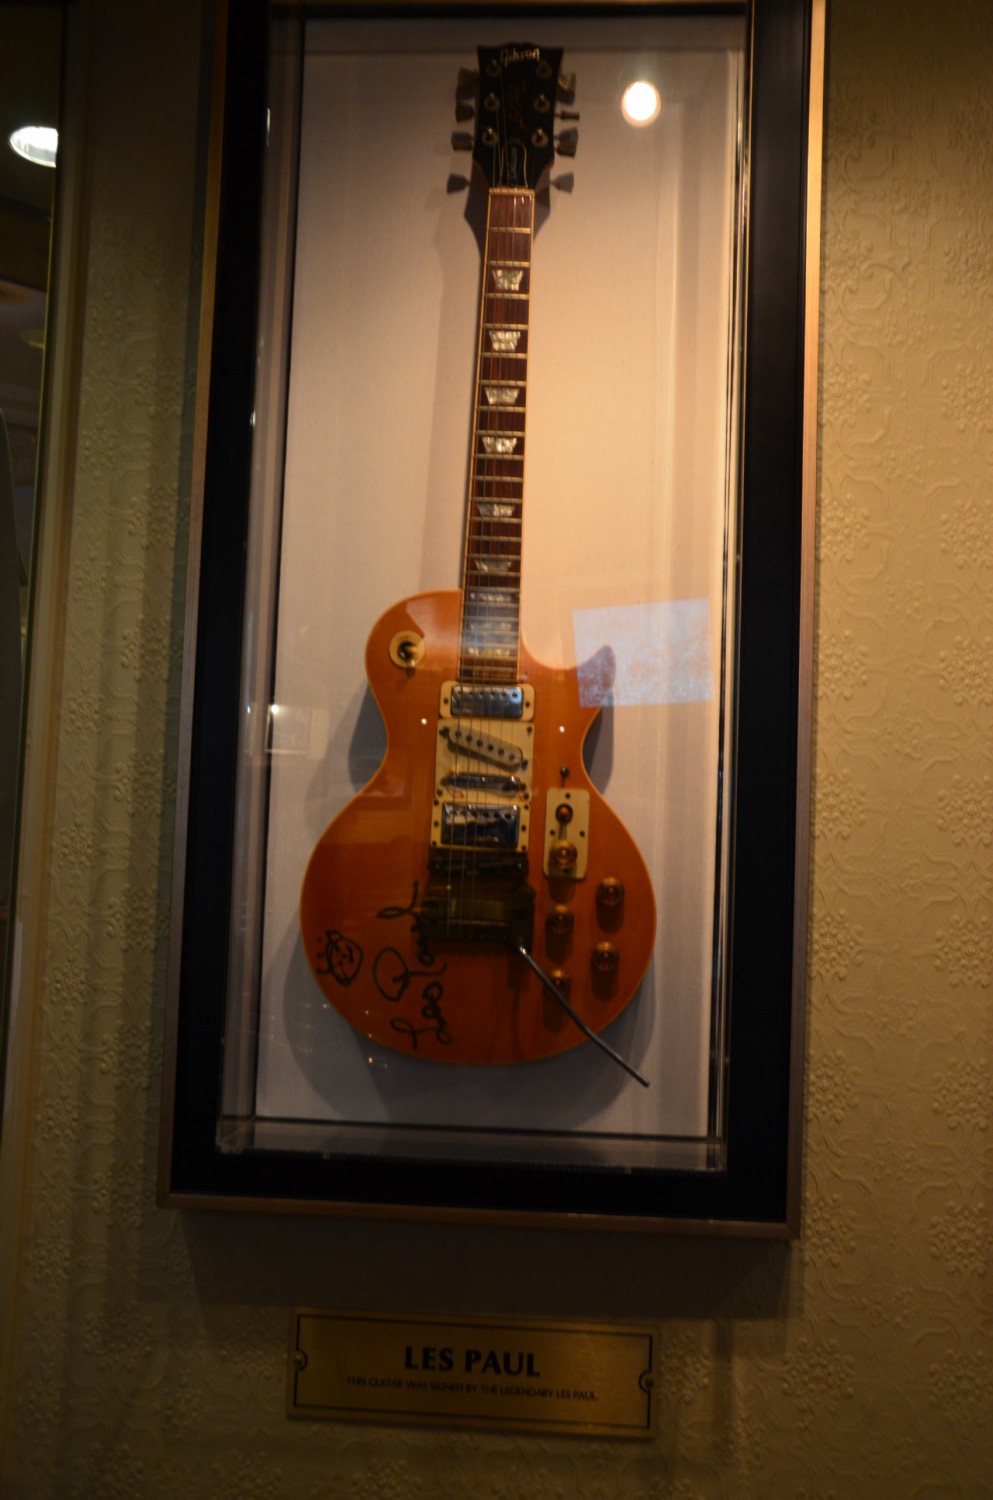 Les Paul gitarja